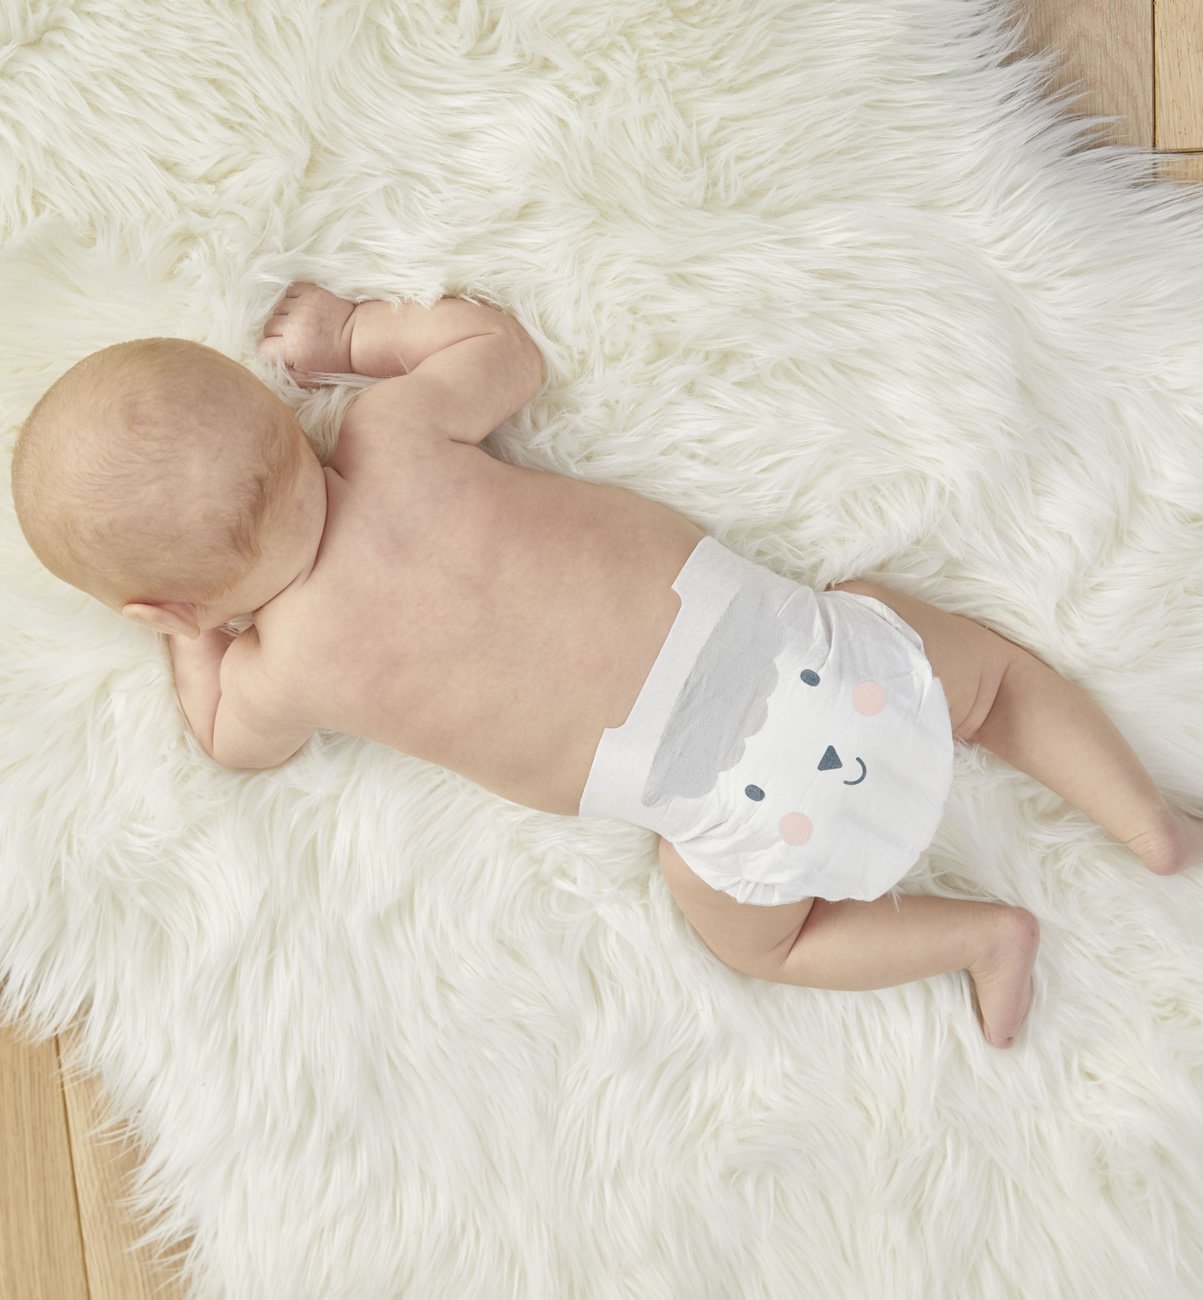 Υπερ-απορροφητικές, υποαλλεργικές και βιοδιασπώμενες πάνες για το μωρό